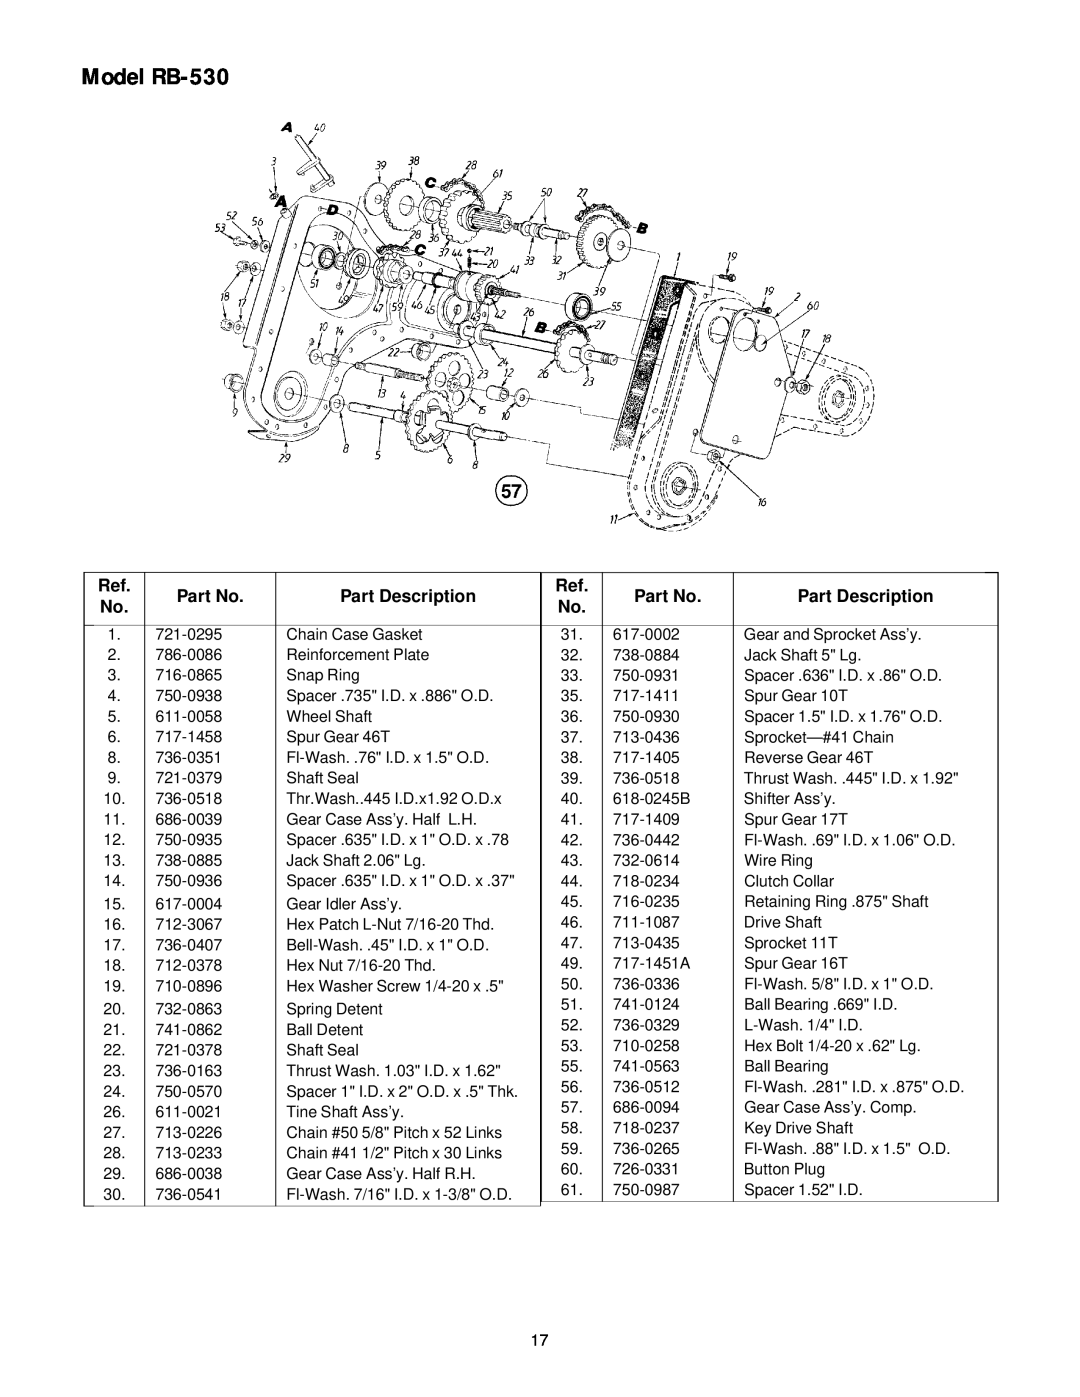 White Outdoor manual Model RB-530, Part Description 